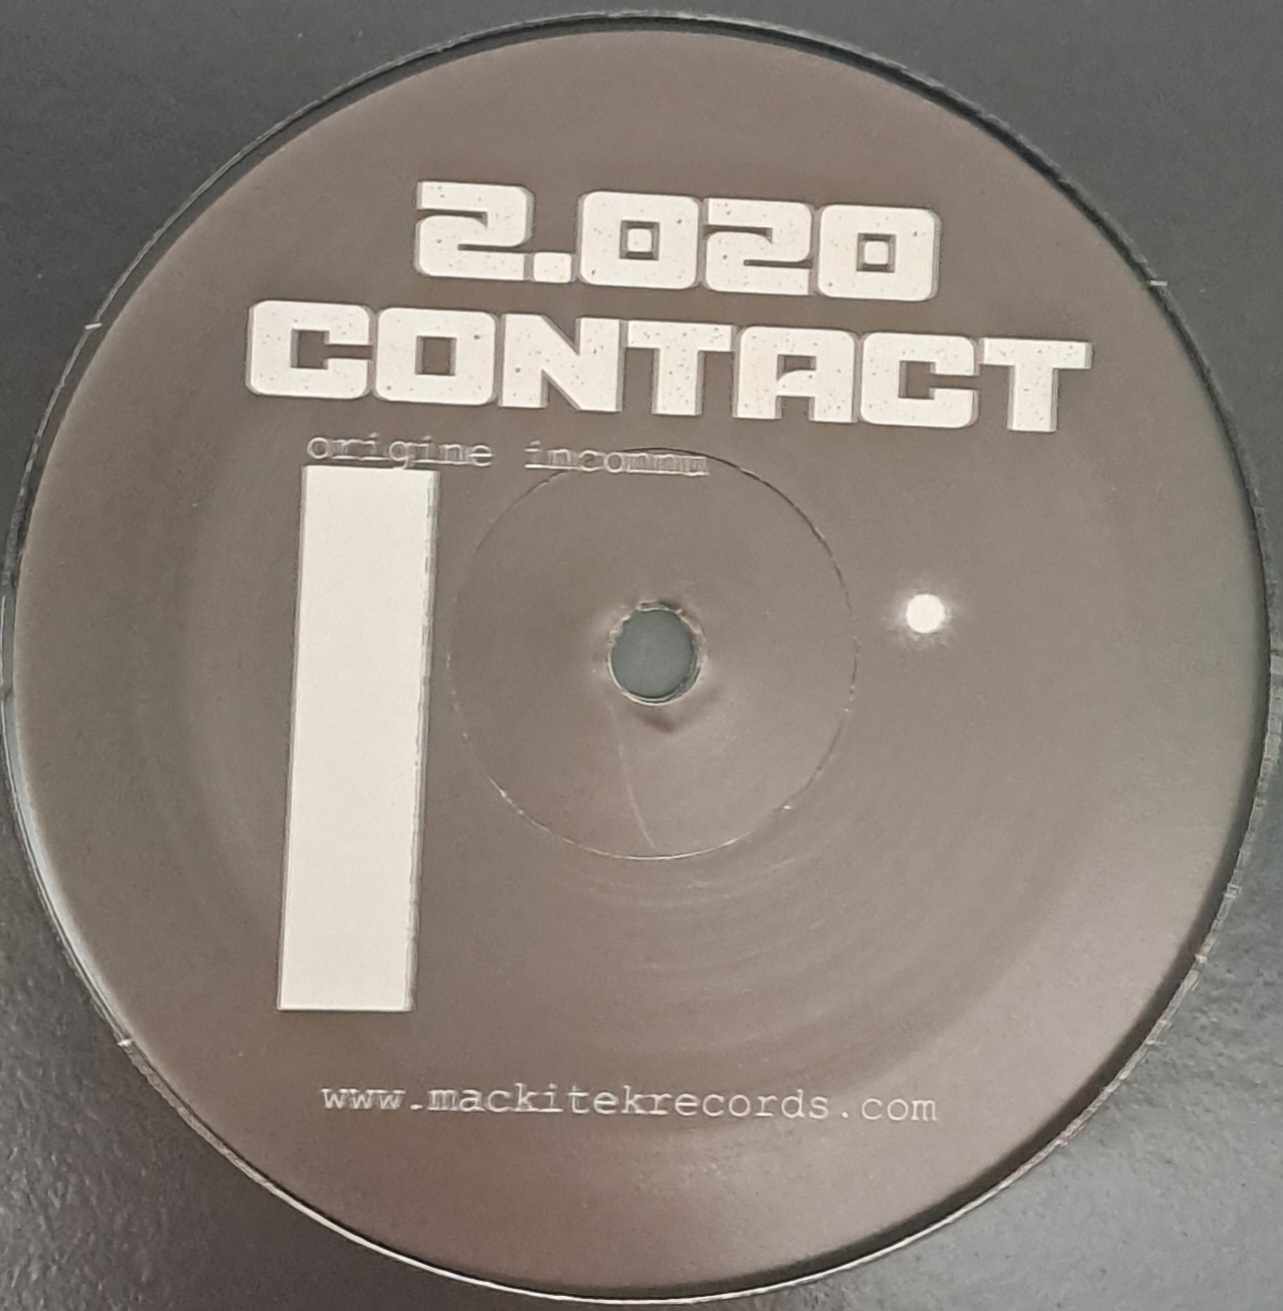 Contact 2.020 (toute dernière copie en stock) - vinyle freetekno